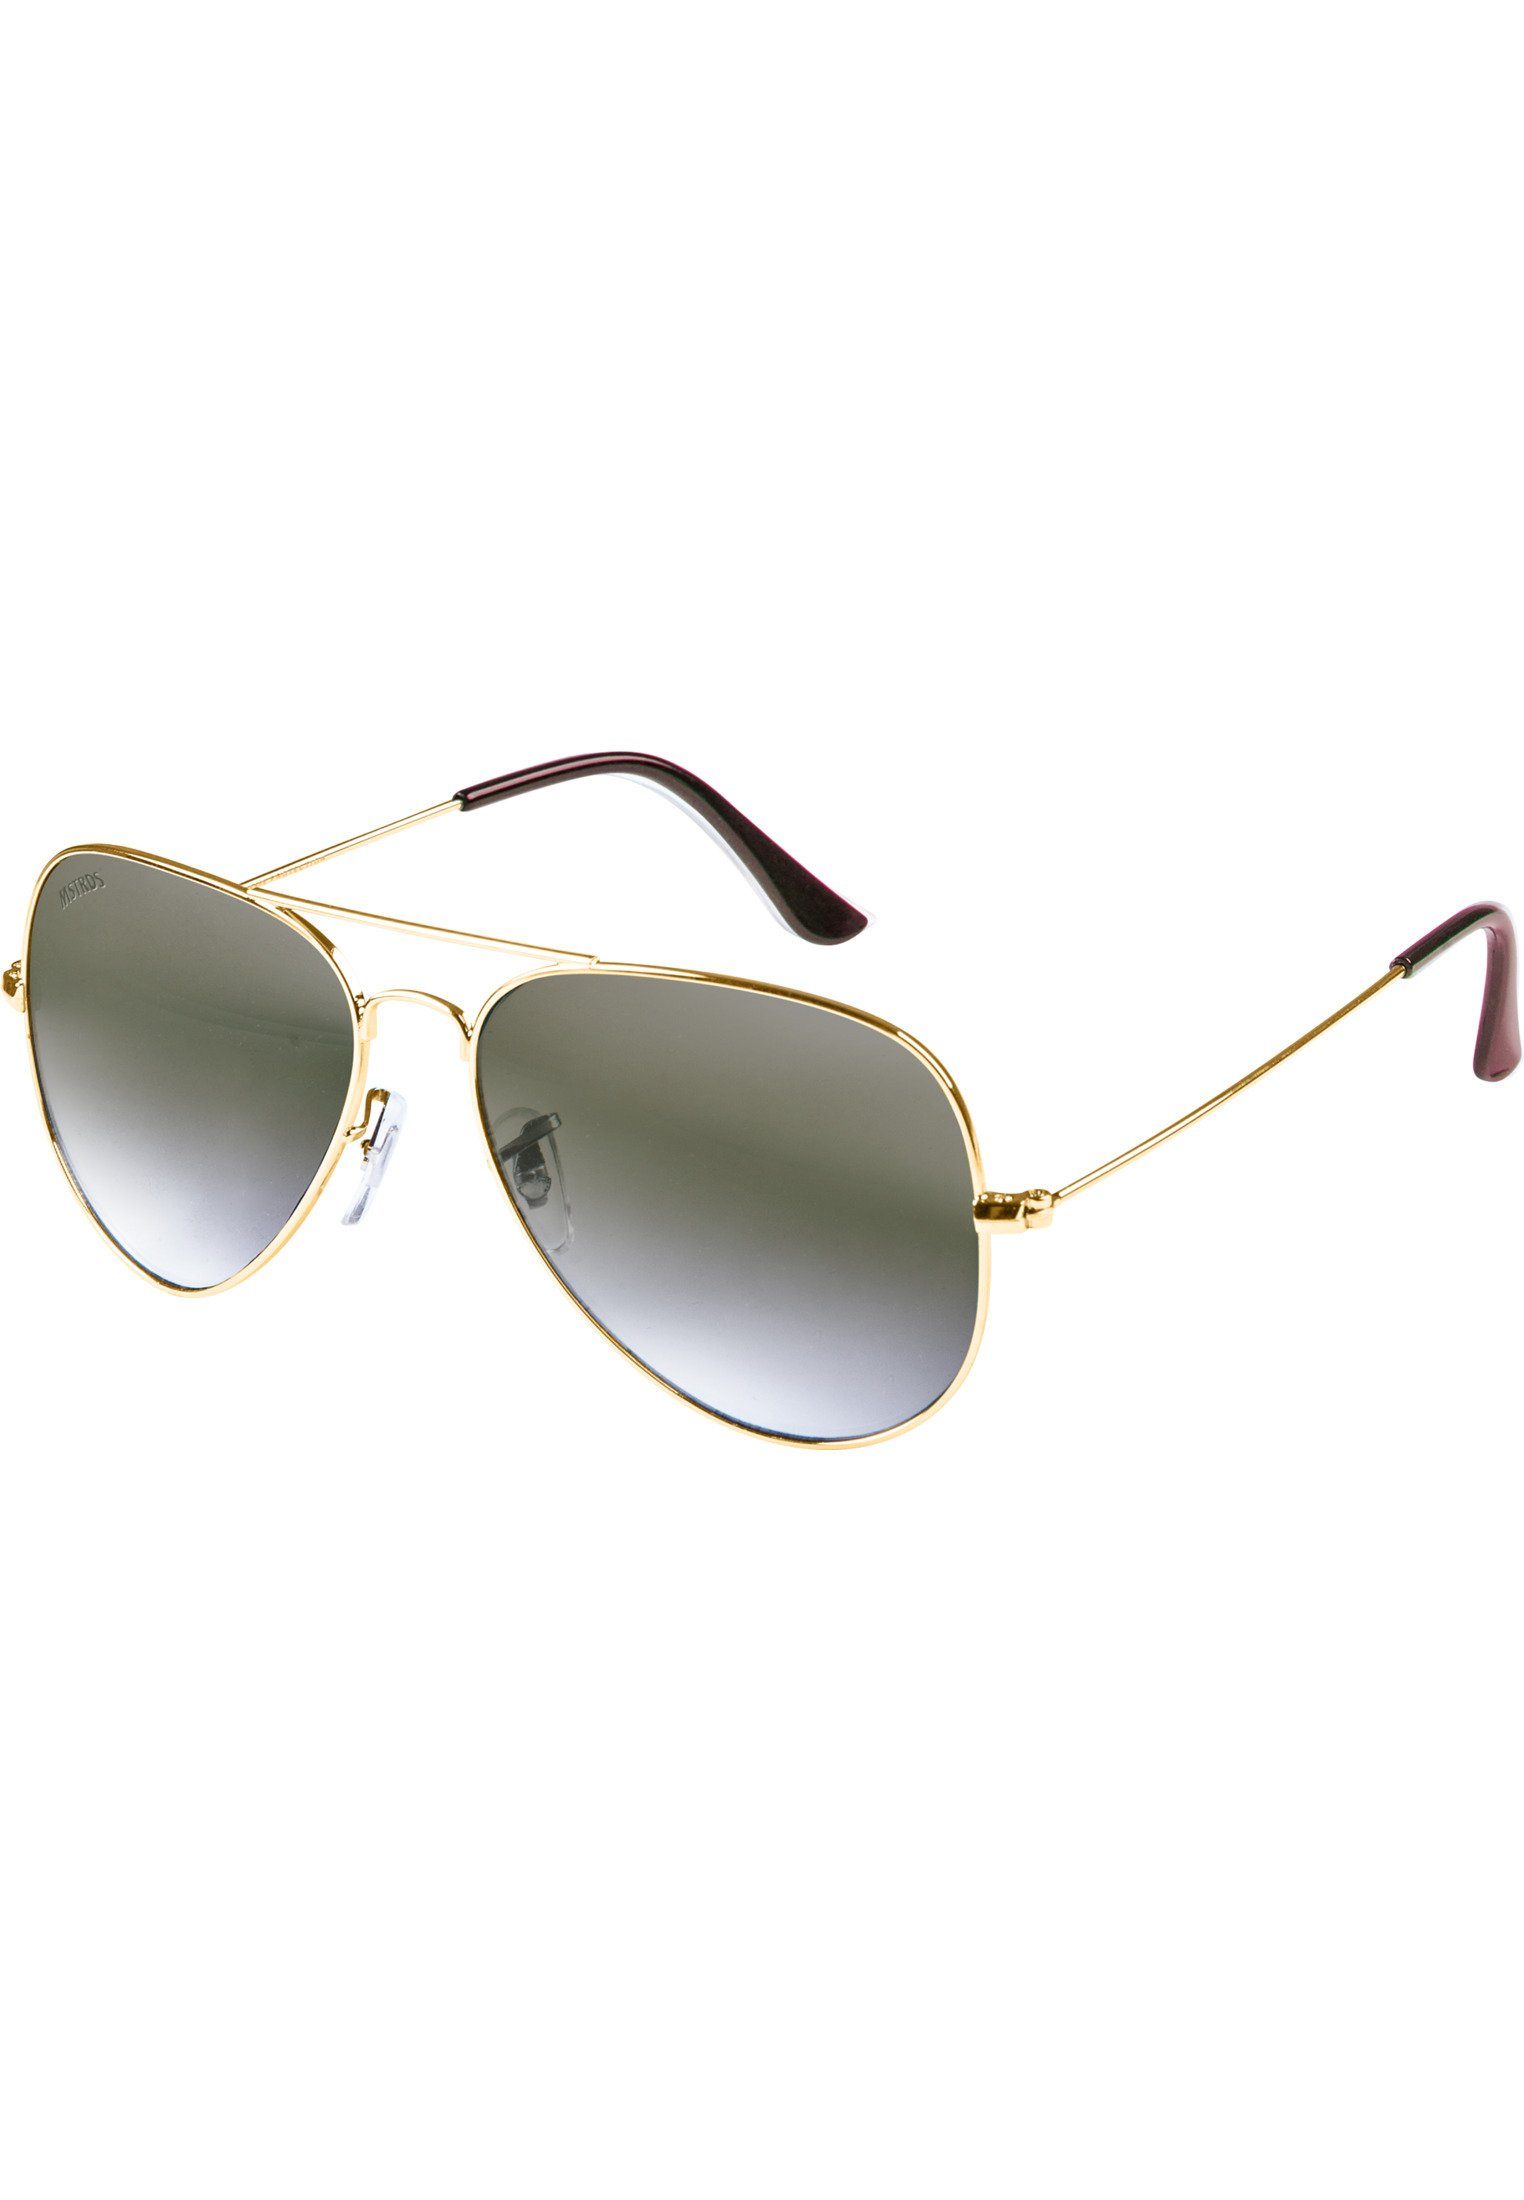 MSTRDS Sonnenbrille Accessoires Sunglasses Freien Ideal geeignet Youth, Sport für PureAv auch im